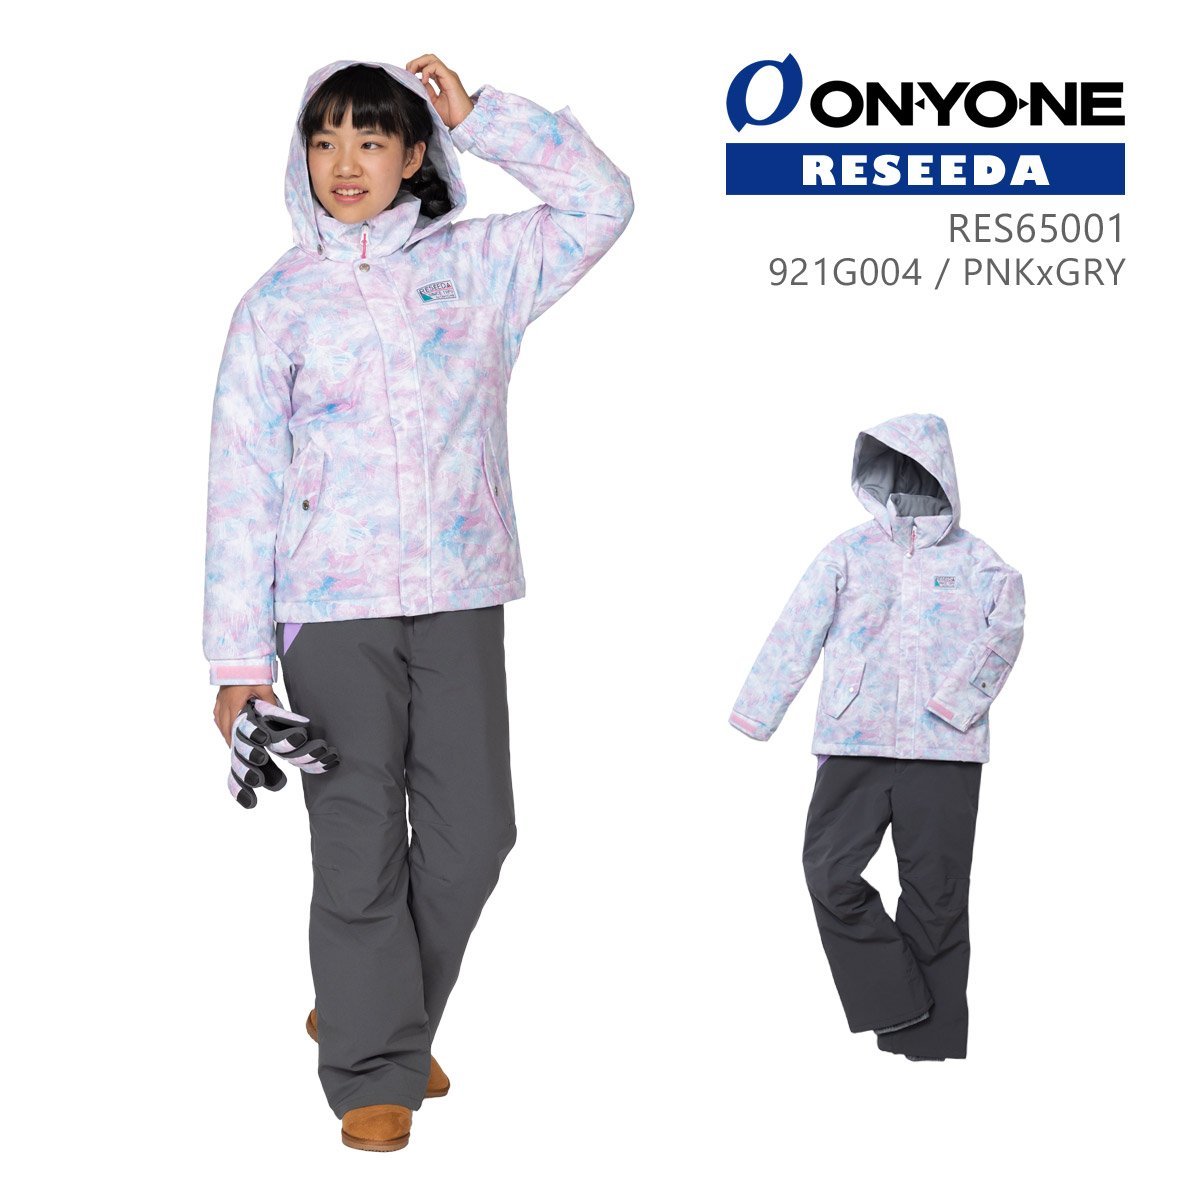 1430313-ONYONE/JUNIOR SUIT ジュニア スキーウェア 上下セット 子供用 スノースーツ/13